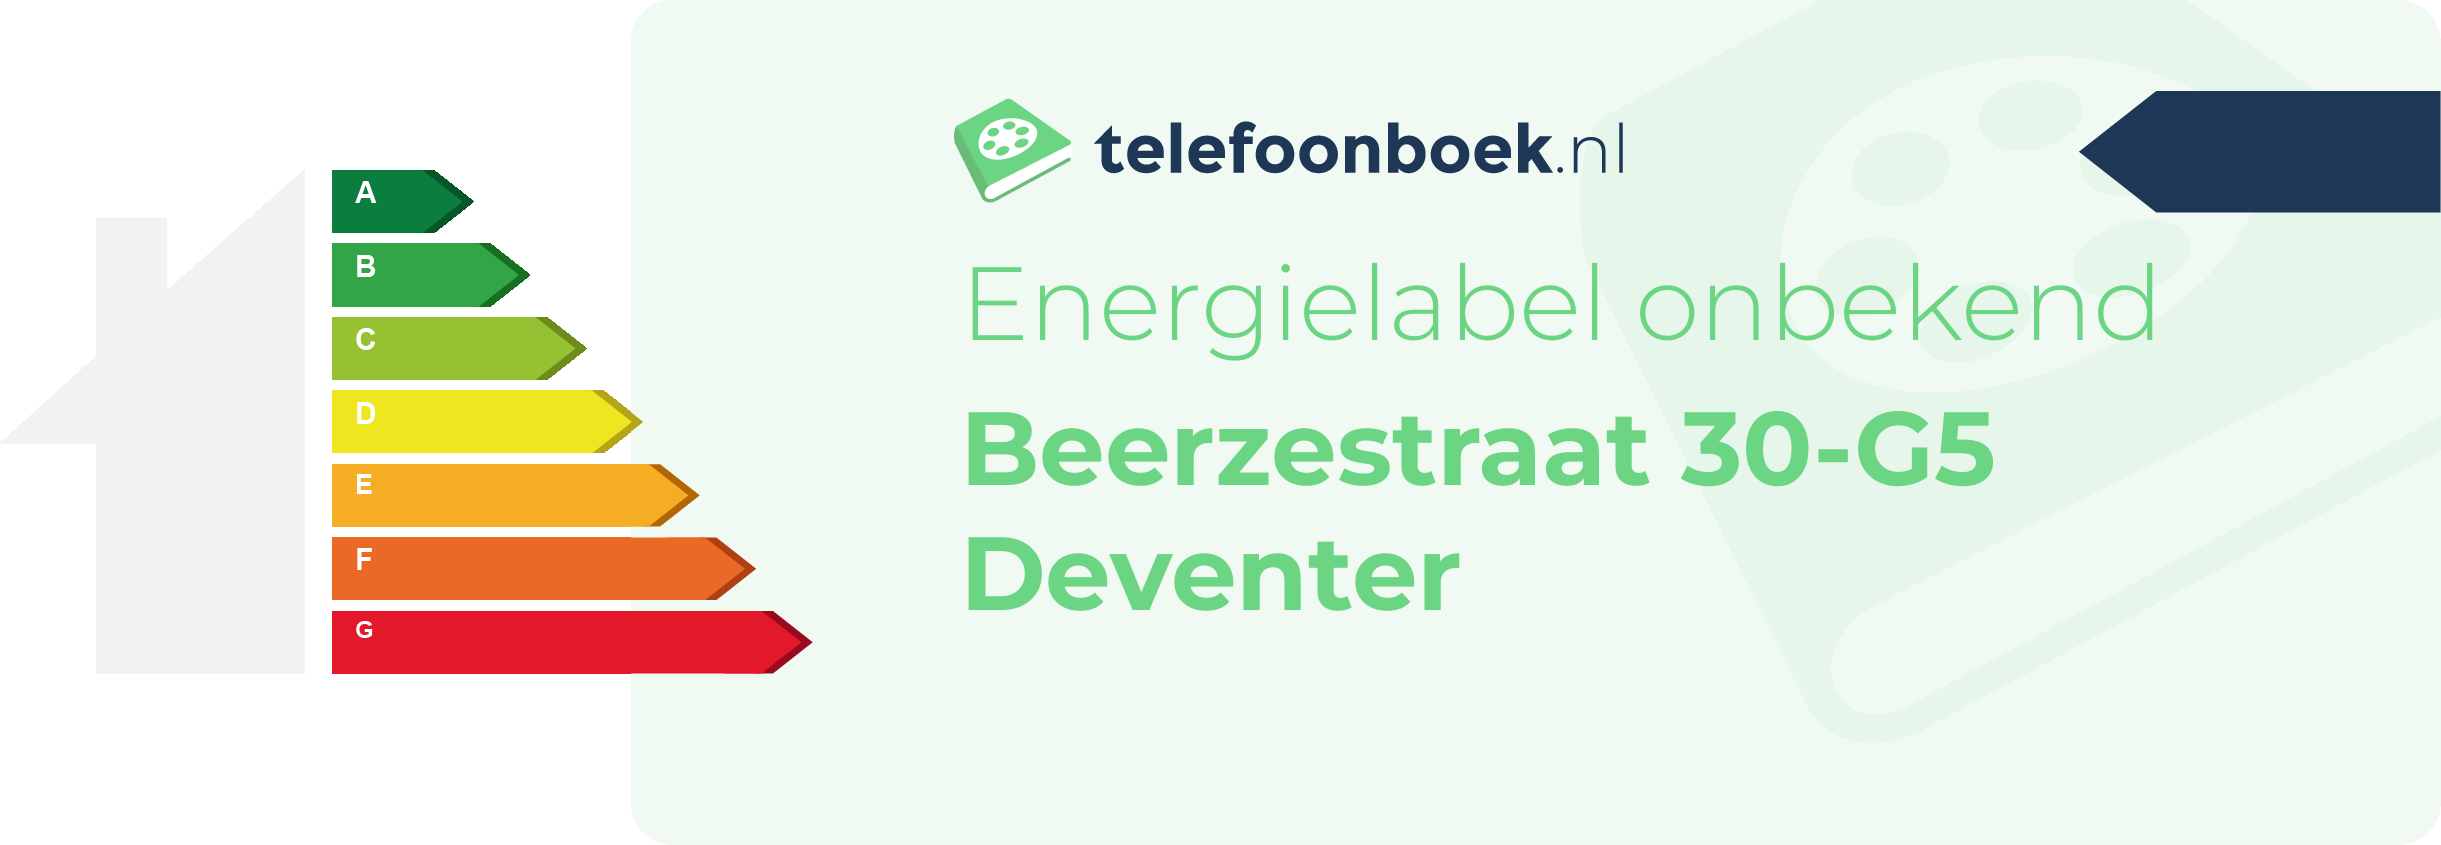 Energielabel Beerzestraat 30-G5 Deventer